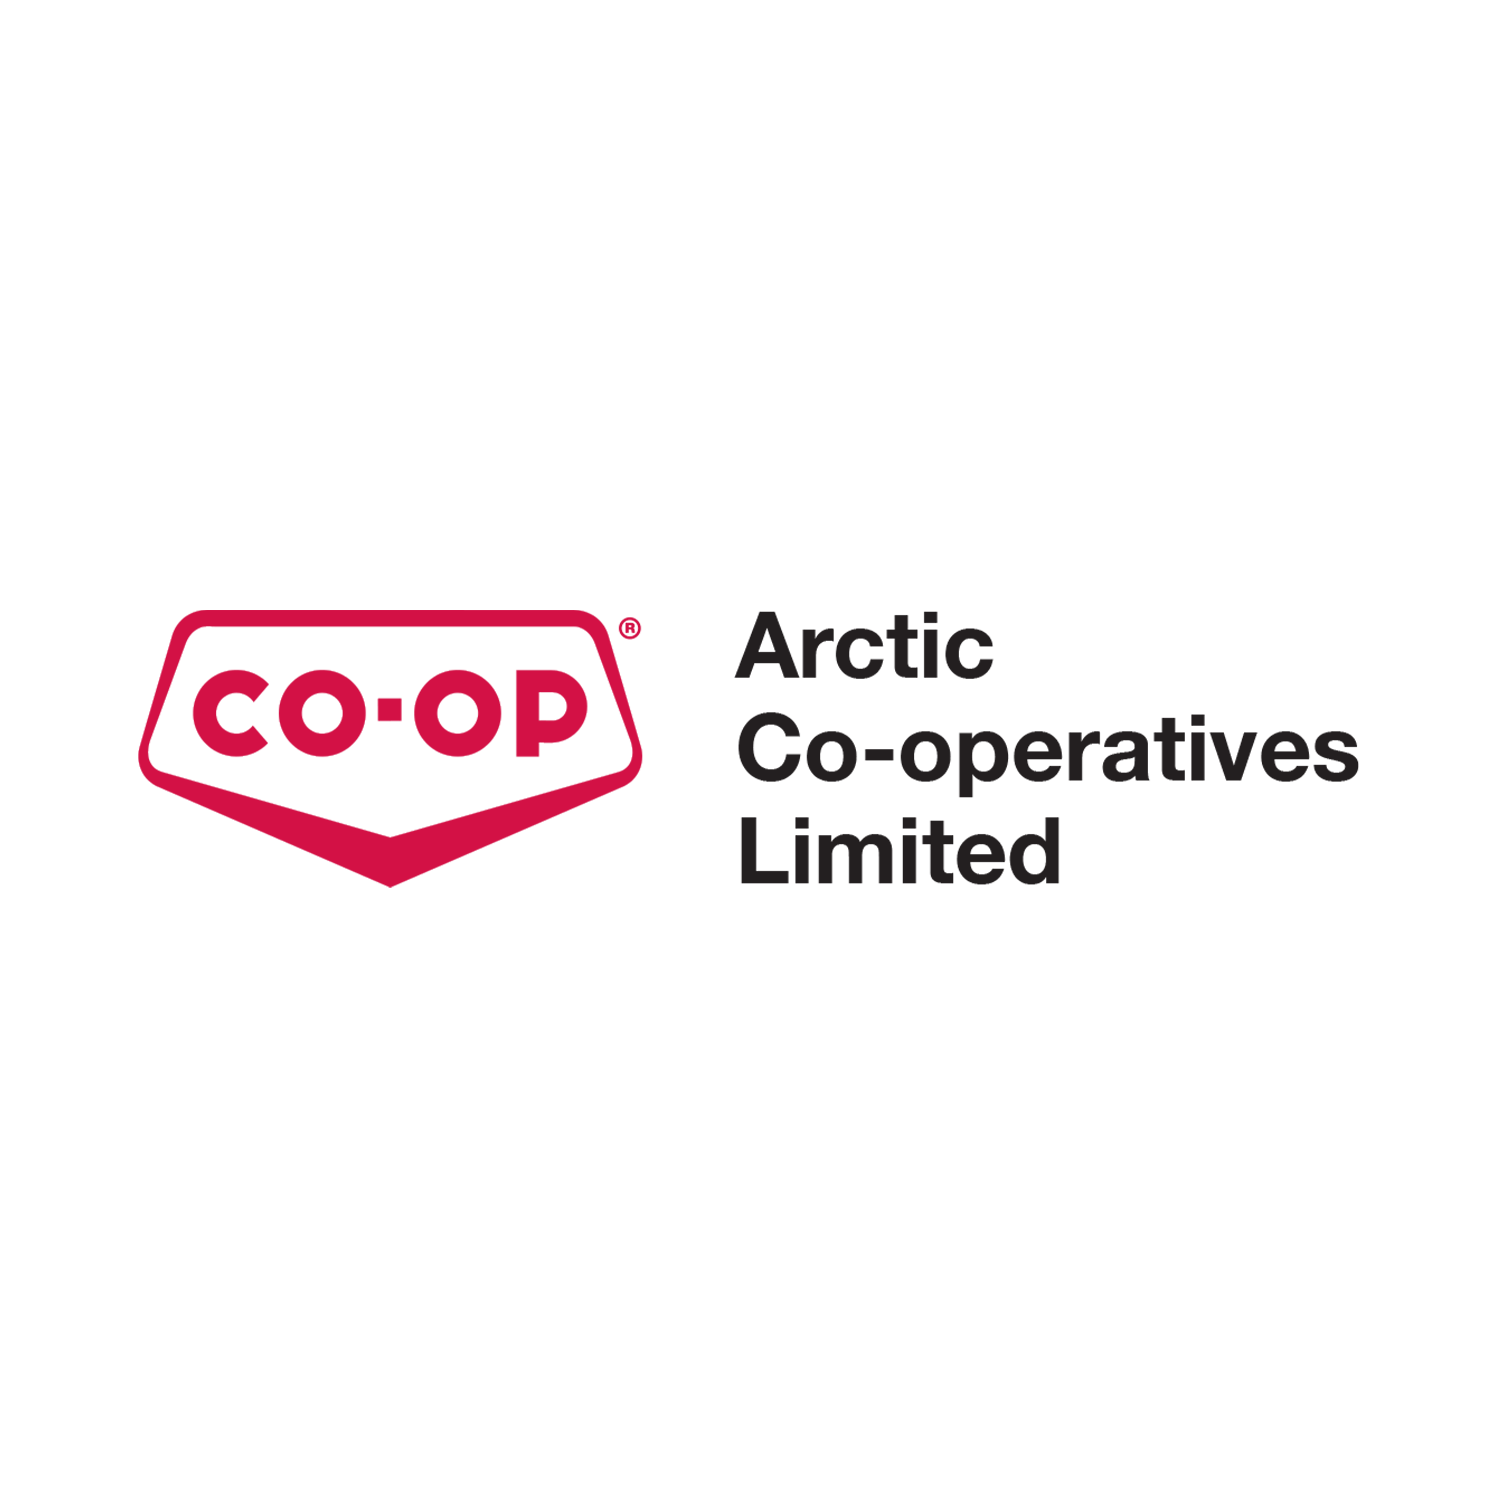 Arctic_Co-ops_logo_2014-no-BG copy.png